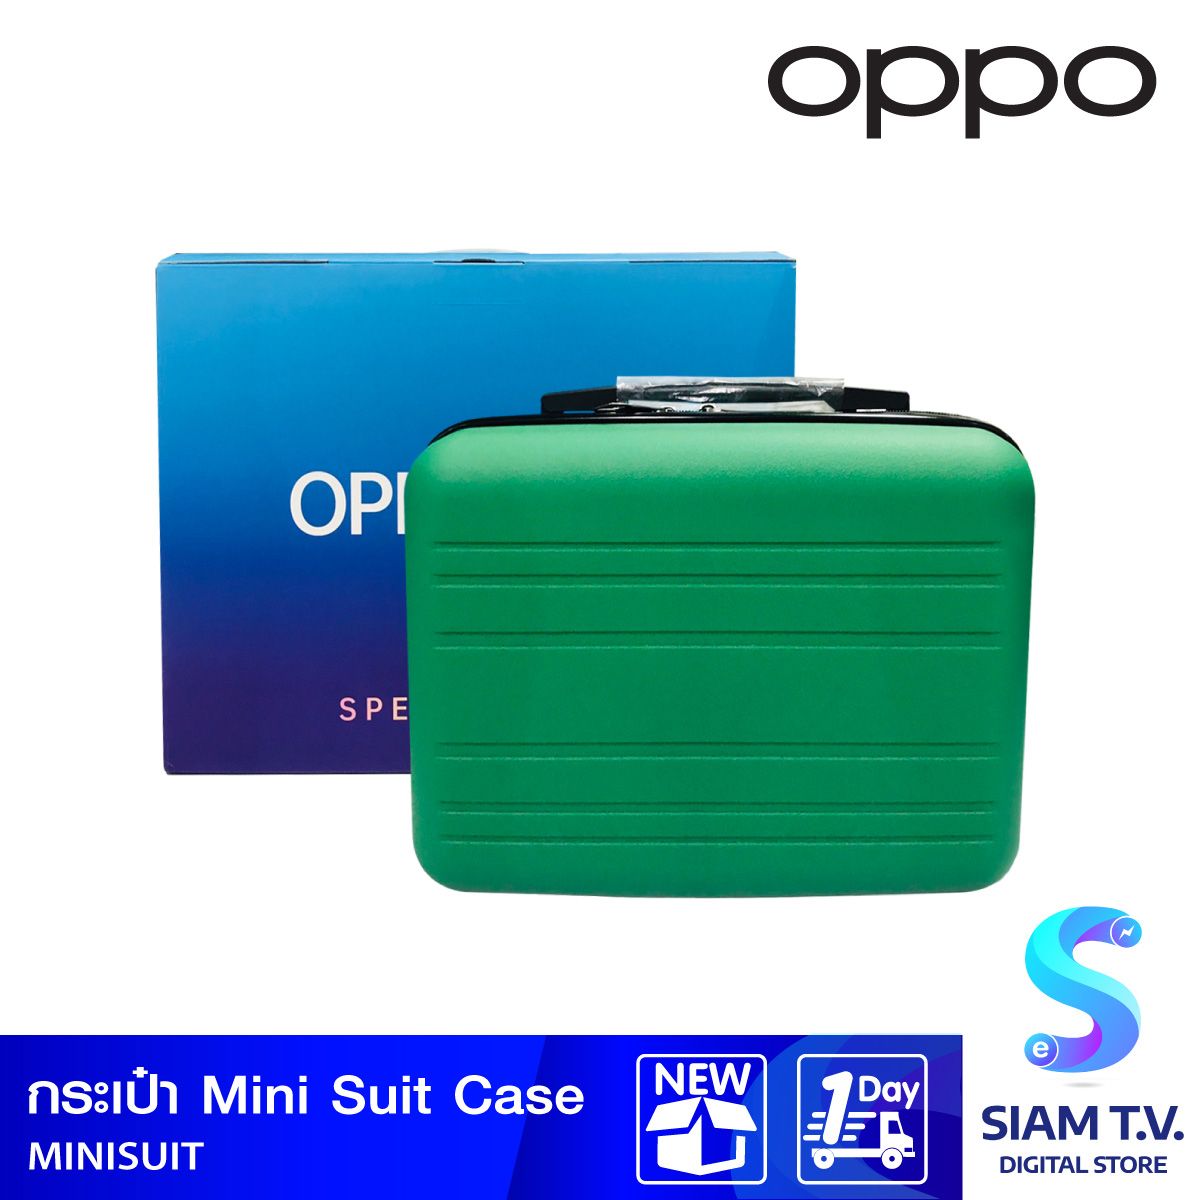 OPPO กระเป๋าMINI SUIT CASE (ใช้สำหรับแถมเท่านั้น)